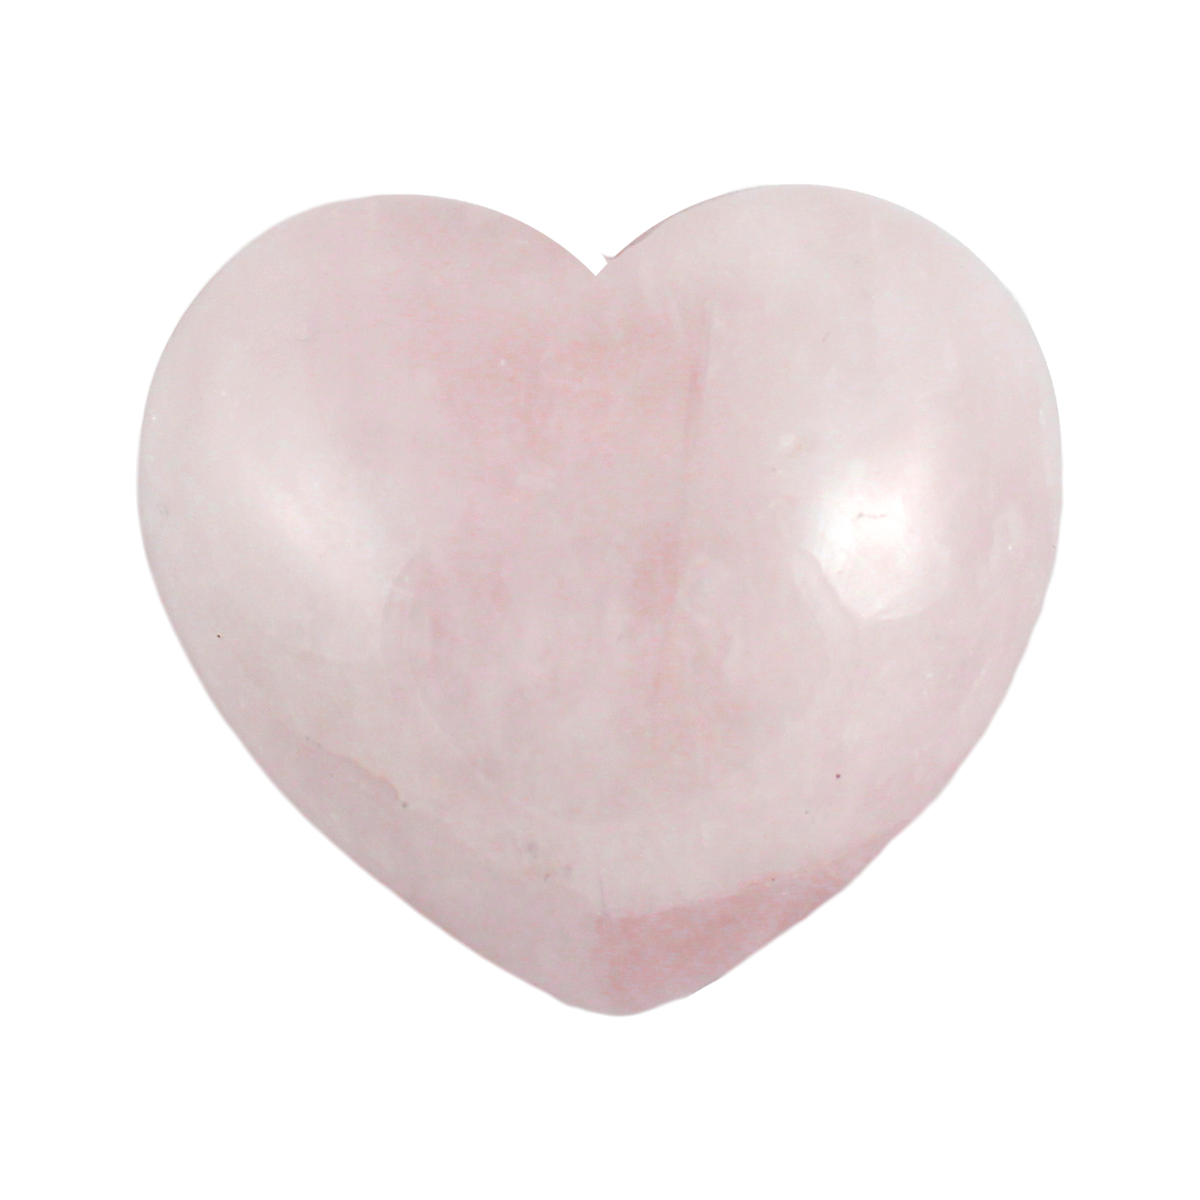 Large heart-shaped Rose Quartz